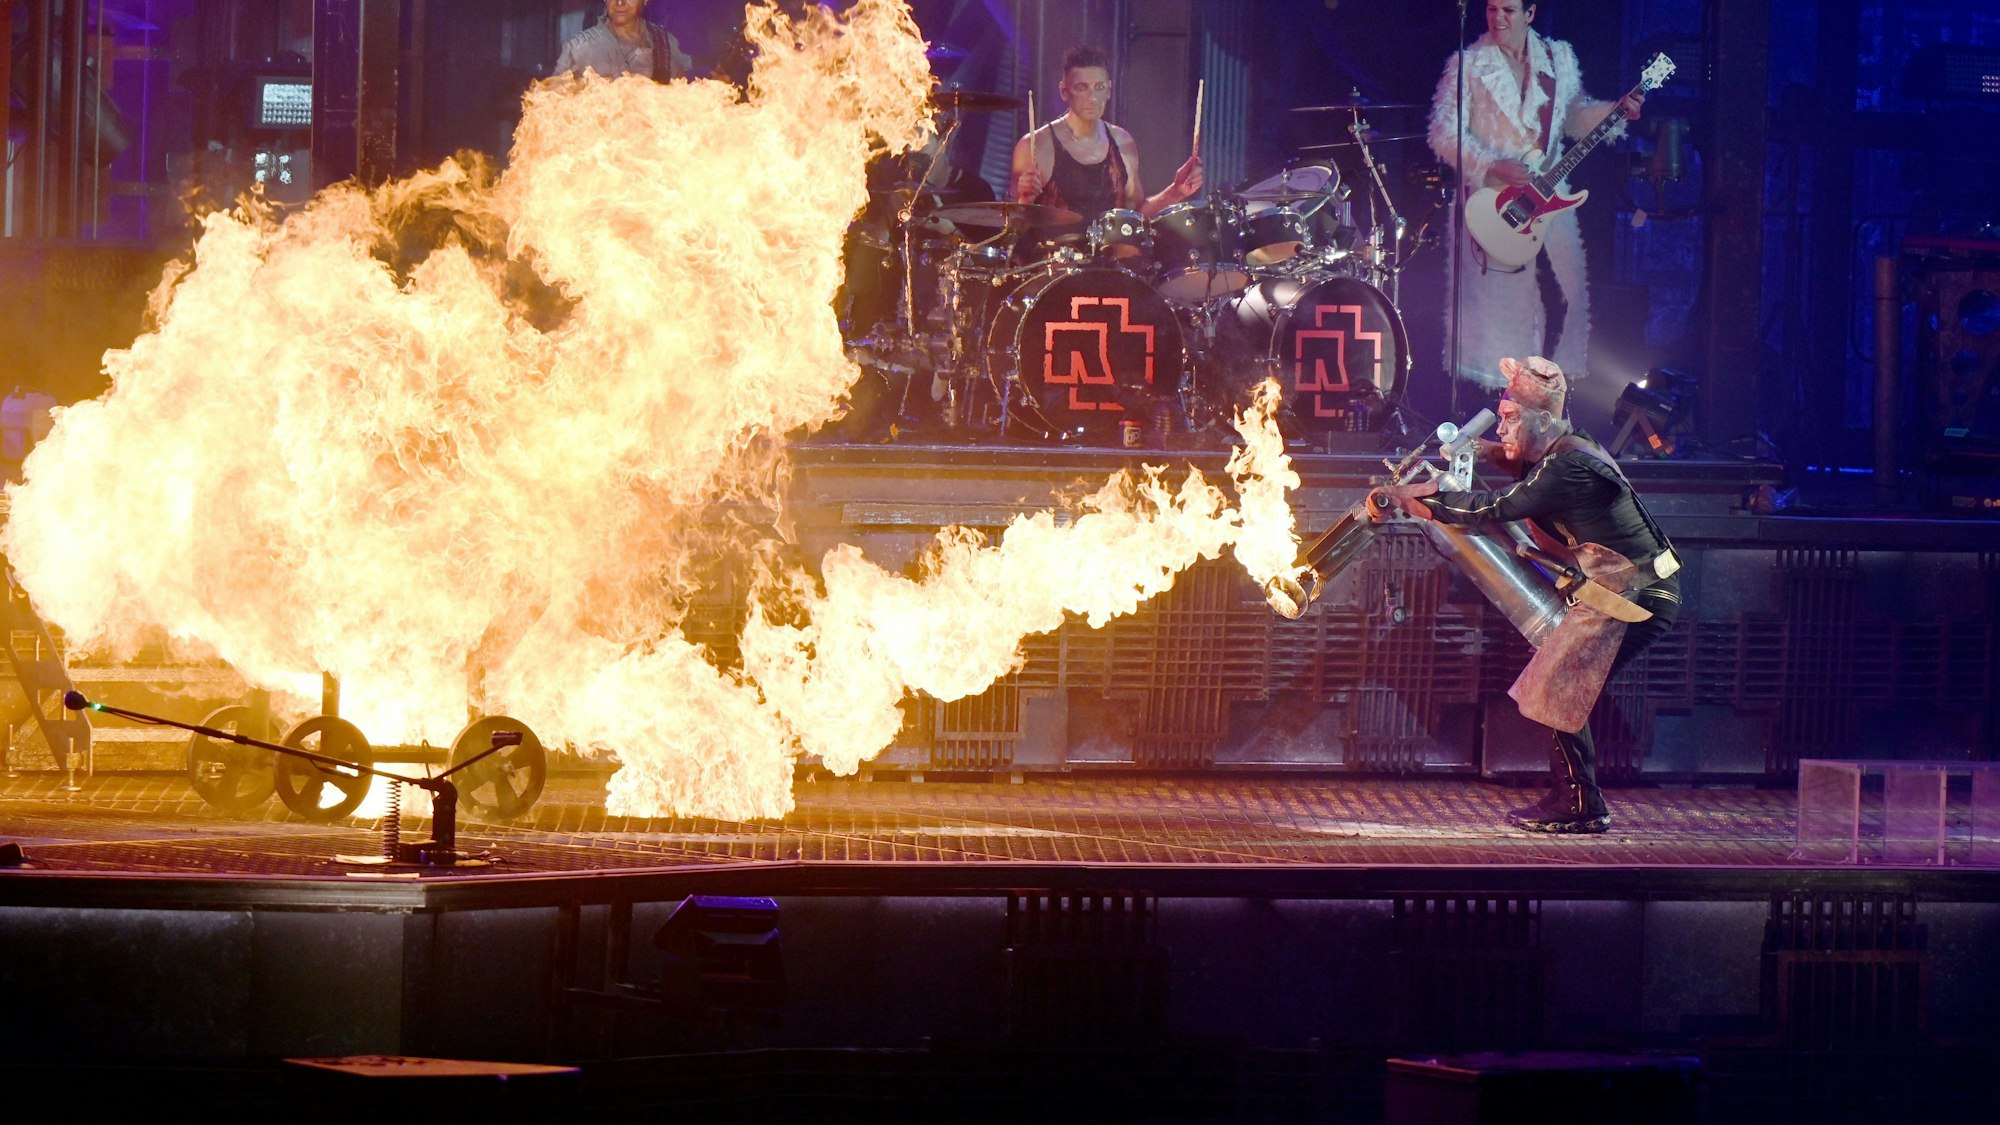 Rammstein-Frontsänger Till Lindemann (r) feuert bei einem Konzert auf der Bühne mit einem Flammenwerfer auf Band-Mitglied Christian Lorenz (l, im Feuer) während des Titels „Mein Teil“.